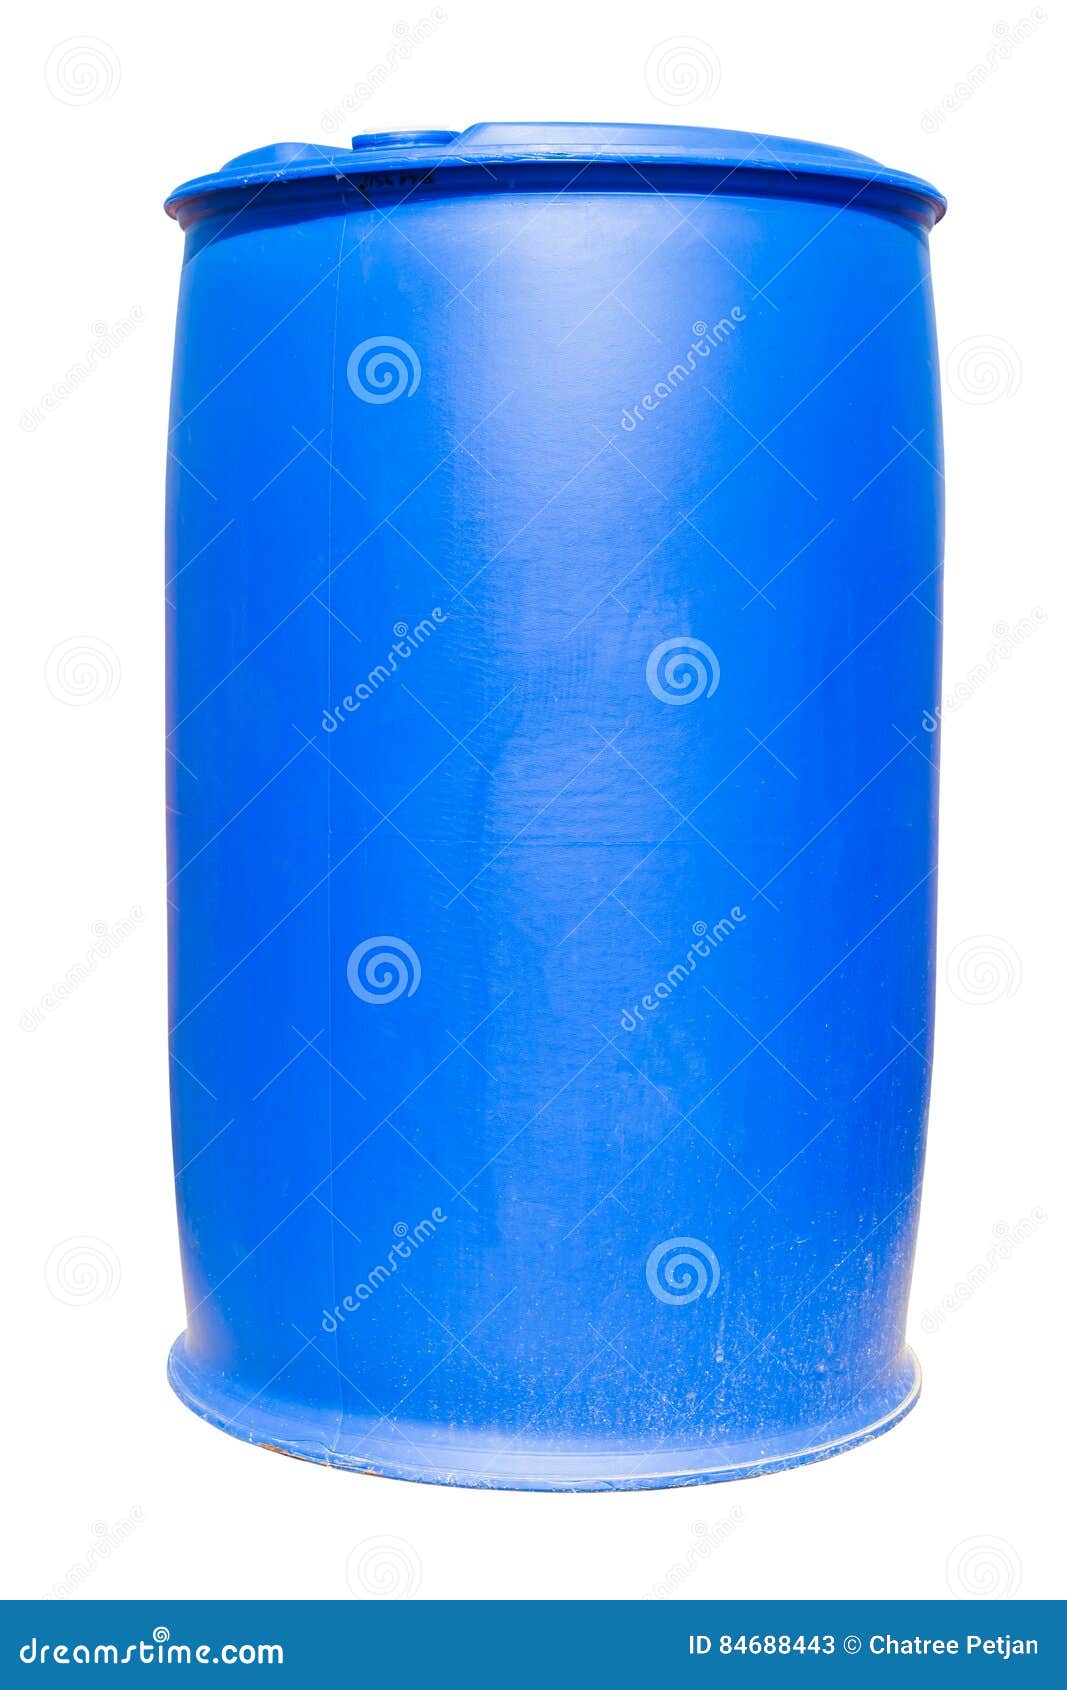 Plastic Blauwe Trommel Die Gebruik in Chemisch Product En Olie Industrieel  Voor H Zijn Stock Afbeelding - Image of niemand, uitvoer: 84688443